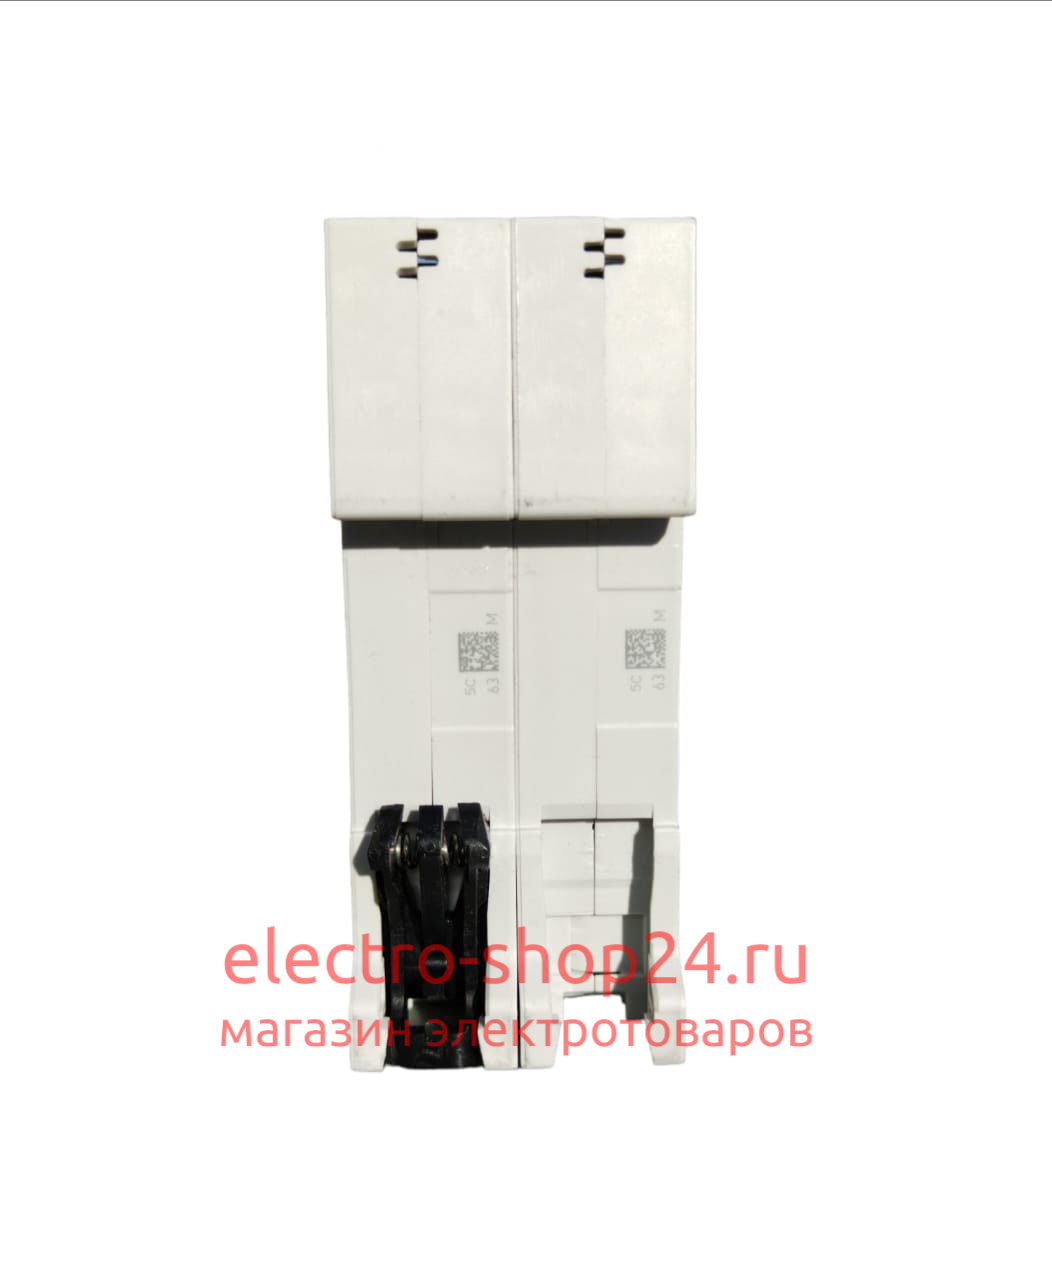 S202 C50 Автоматический выключатель 2-полюсный 50А 6кА (хар-ка C) ABB 2CDS252001R0504 2CDS252001R0504 - магазин электротехники Electroshop